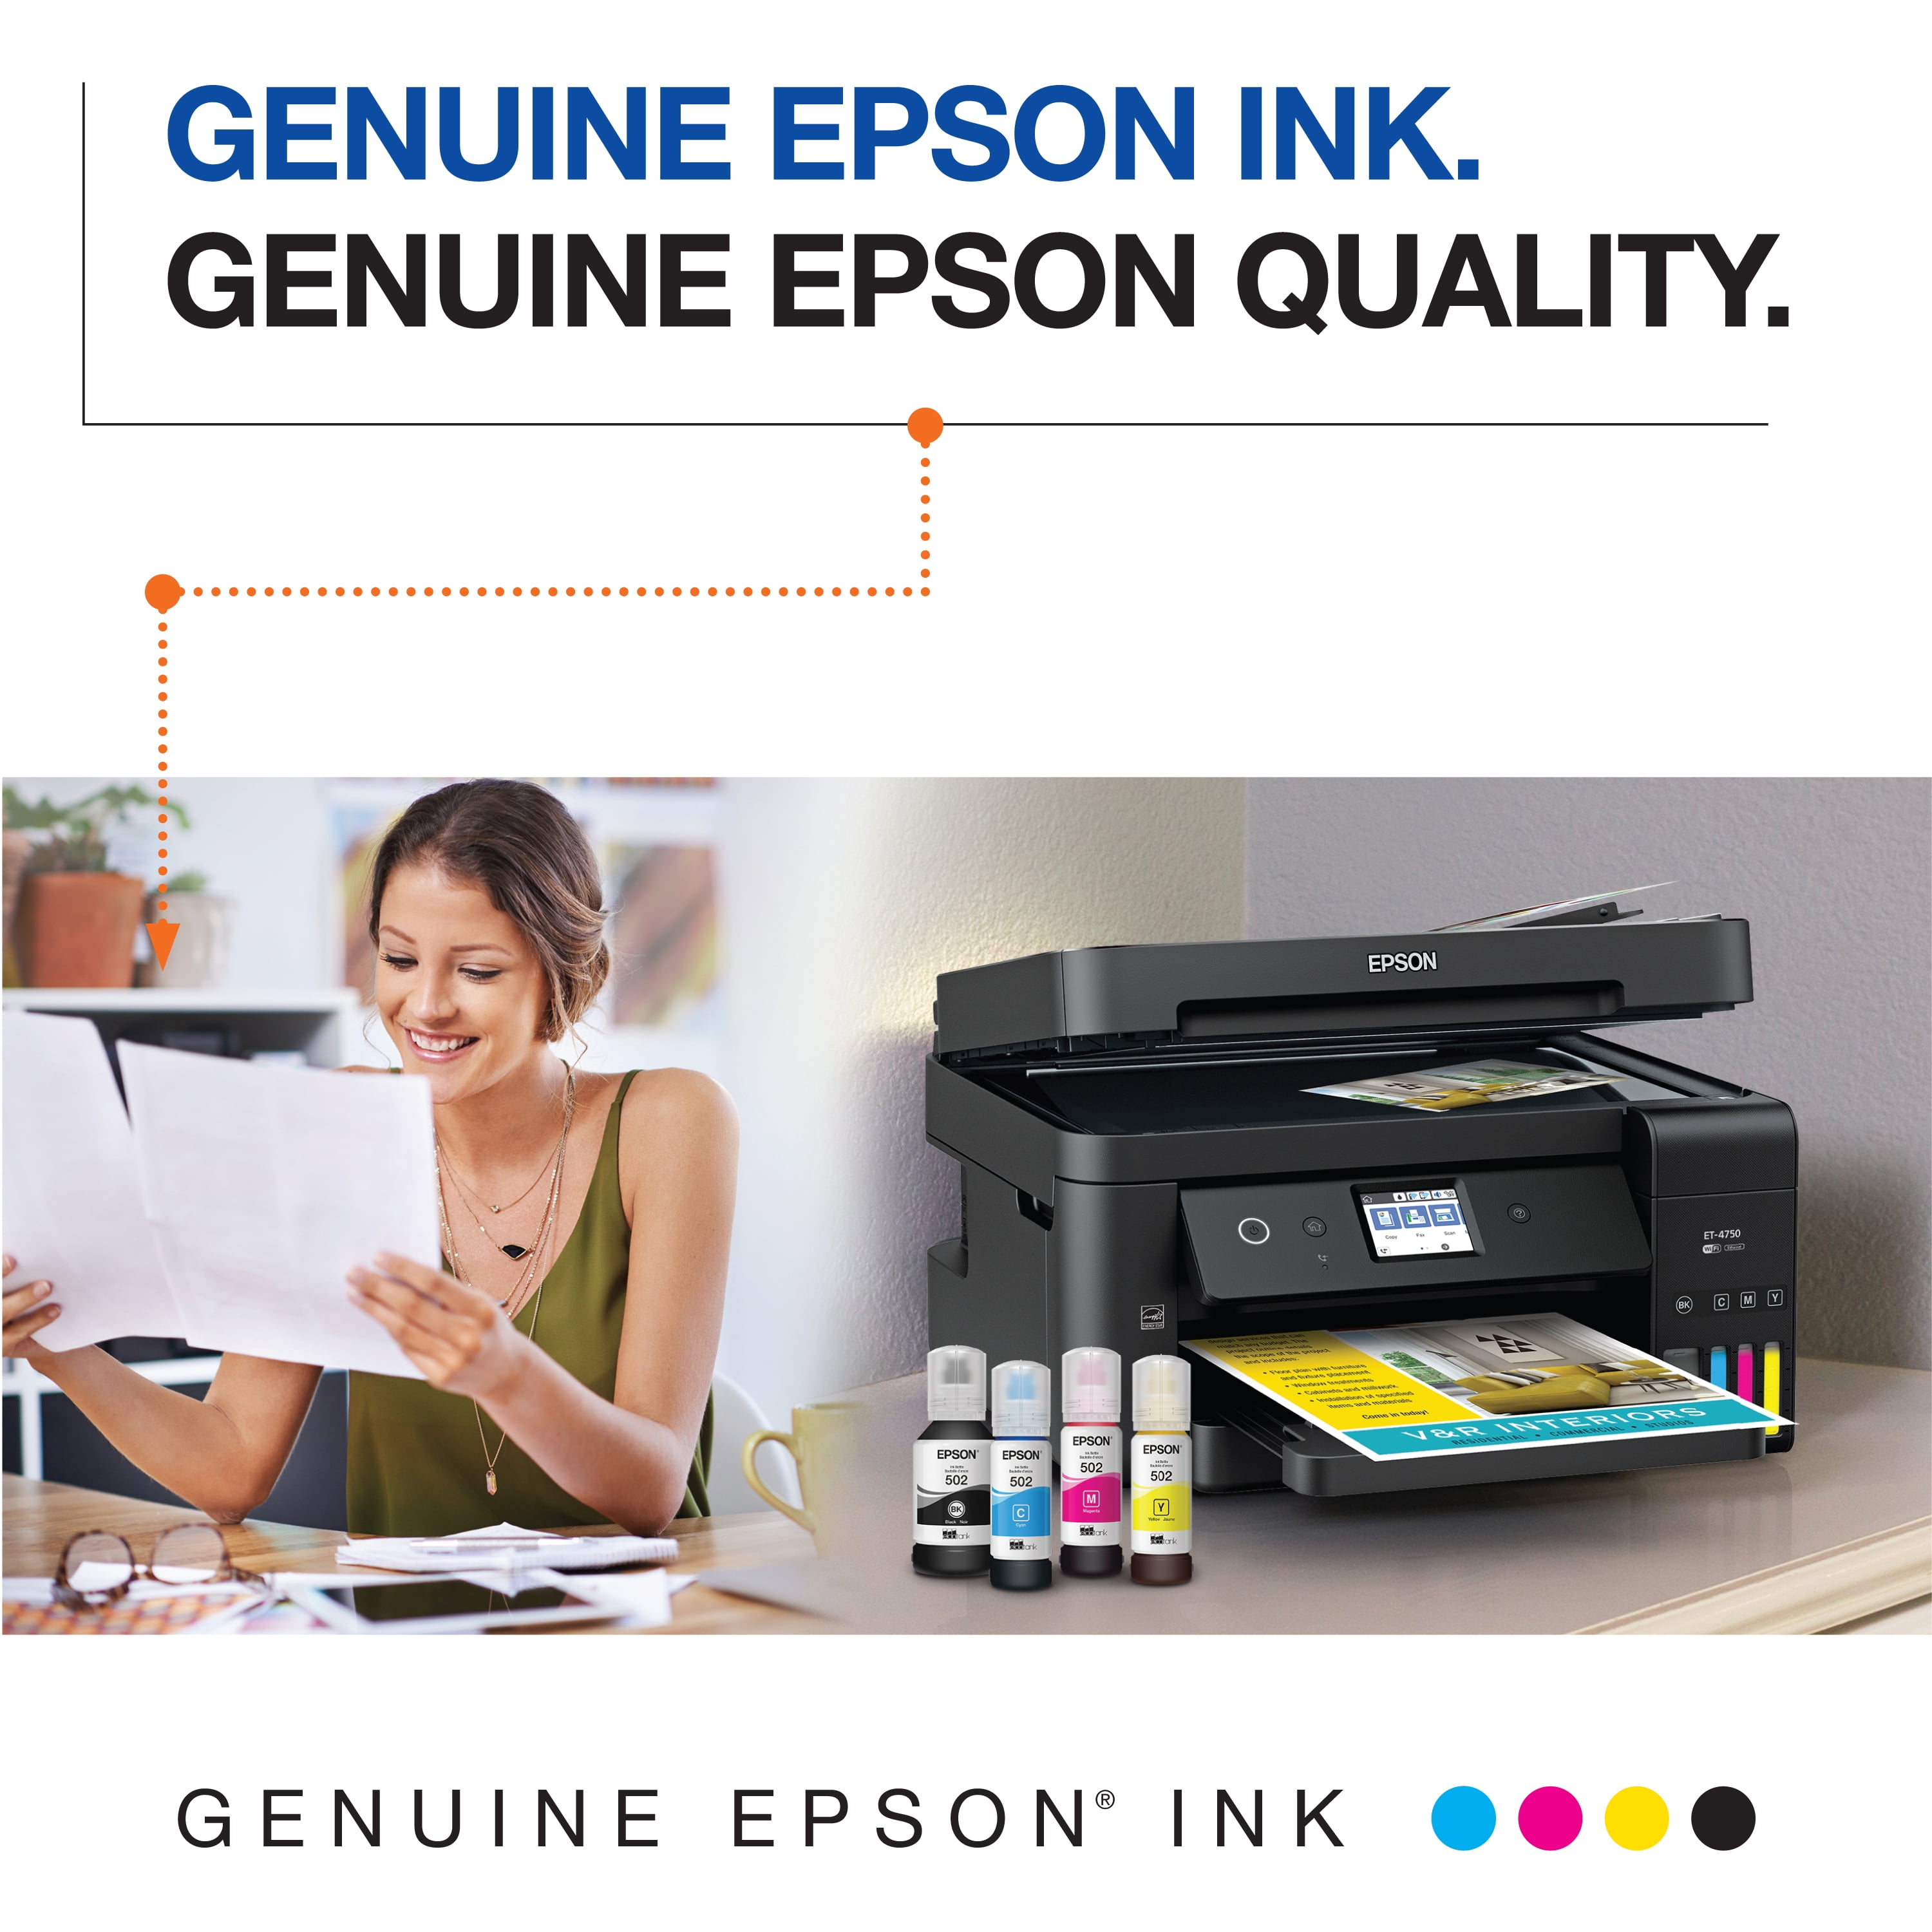 EPSON 502 EcoTank Ink Ultra-high Capacity Bottle Black Works with ET-2750,  ET-2760, ET-2850, ET-3750, ET-3760, ET-3850, ET-4850, and other select  EcoTank models 